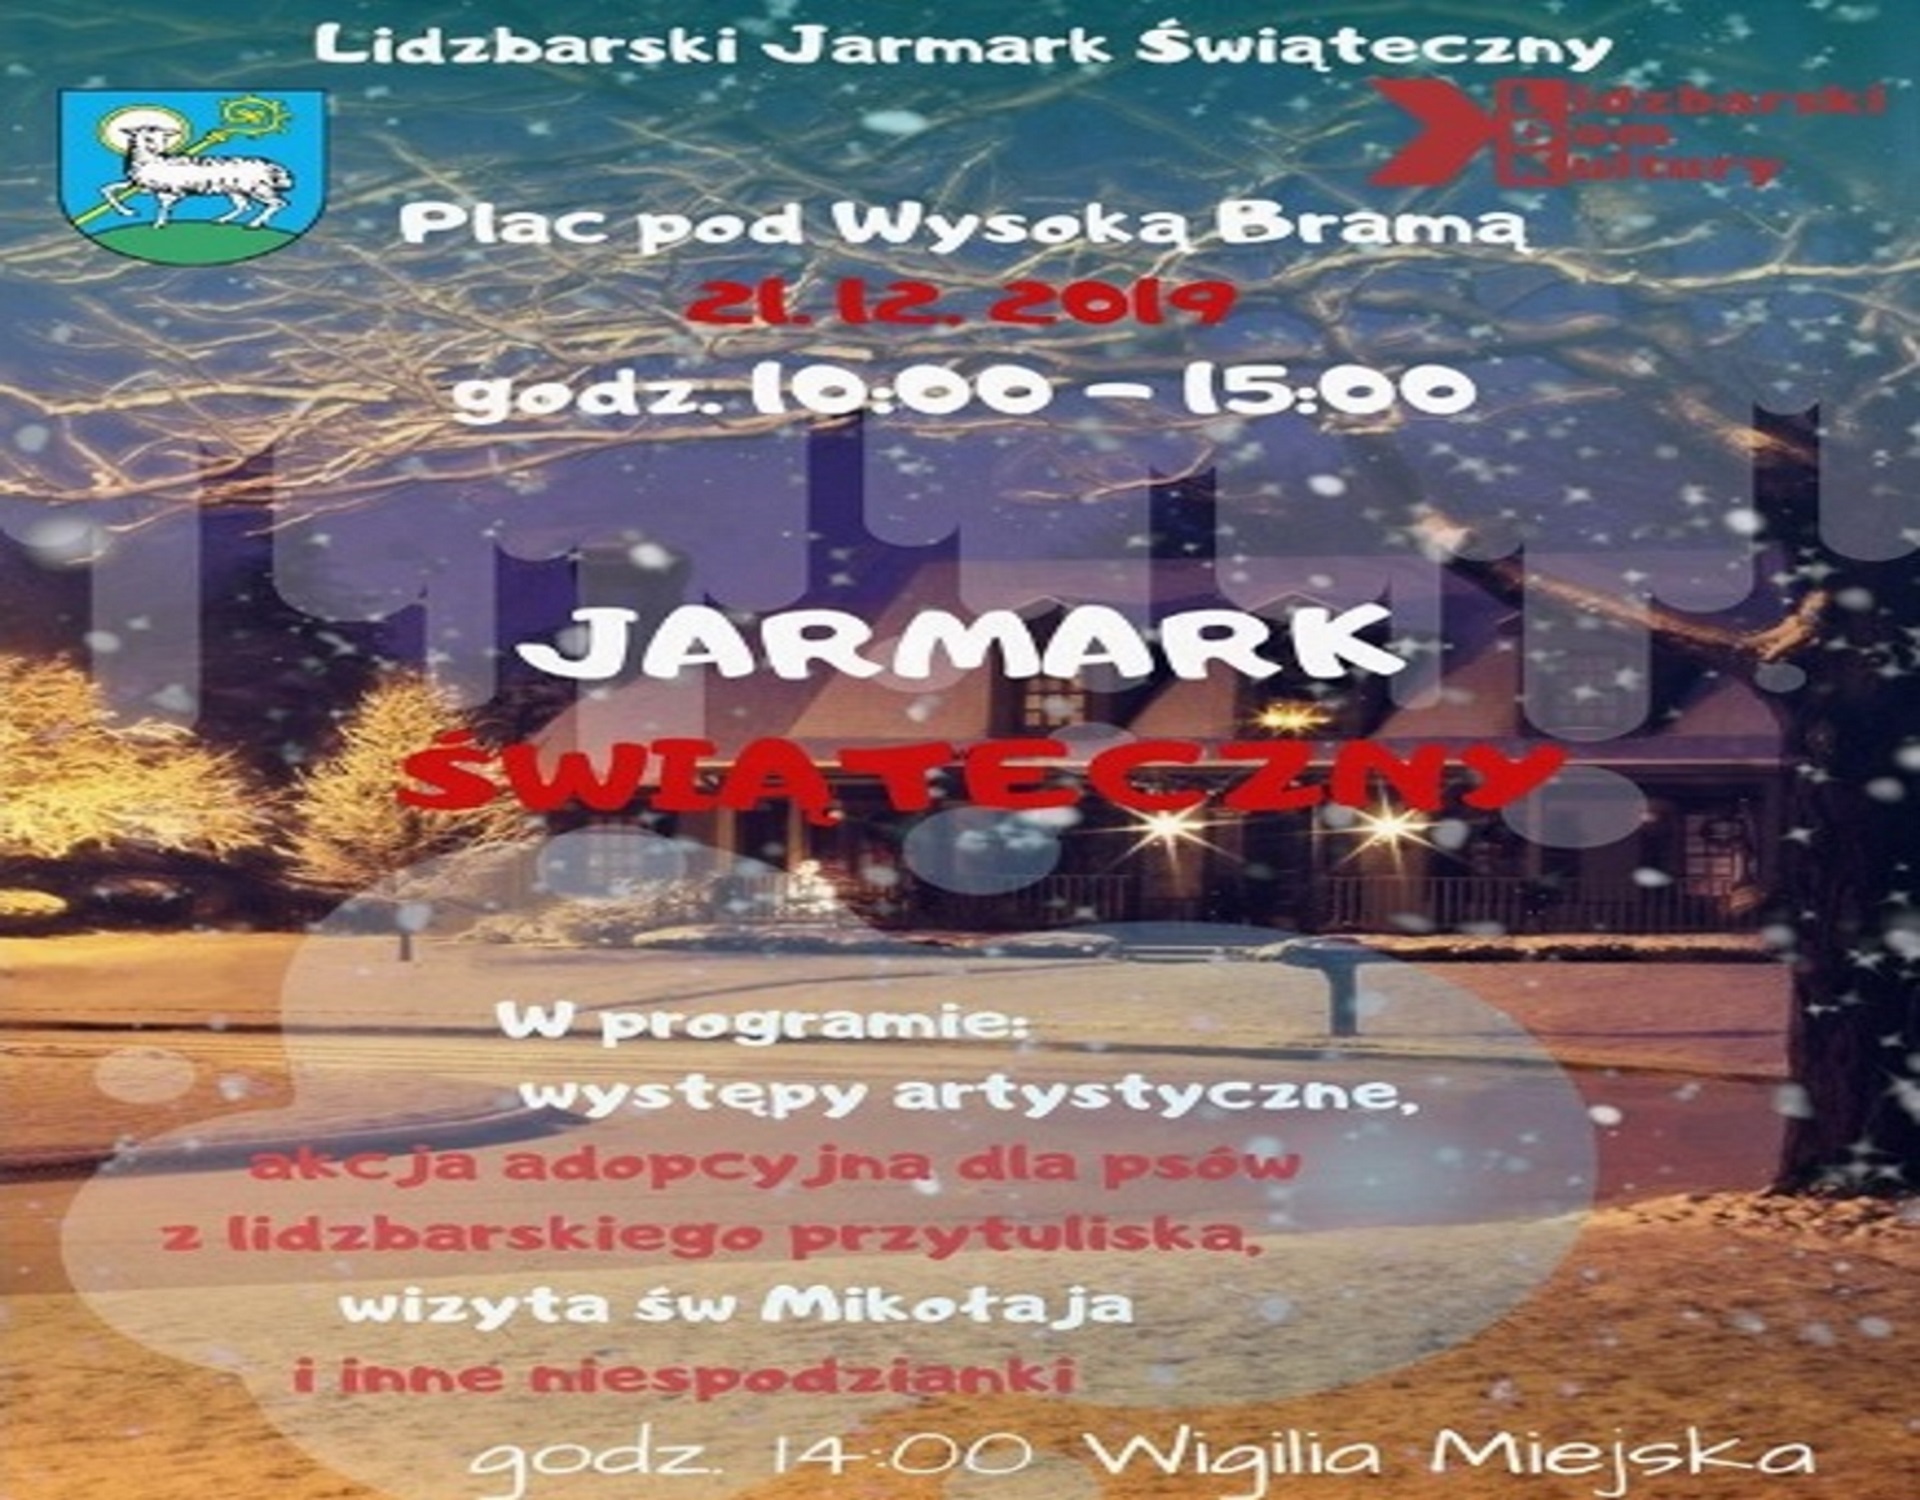 Plakat zapraszający na Jarmark Świąteczny. Zdjęcie miasta w scenerii zimowej z informacjami o programie imprezy.  